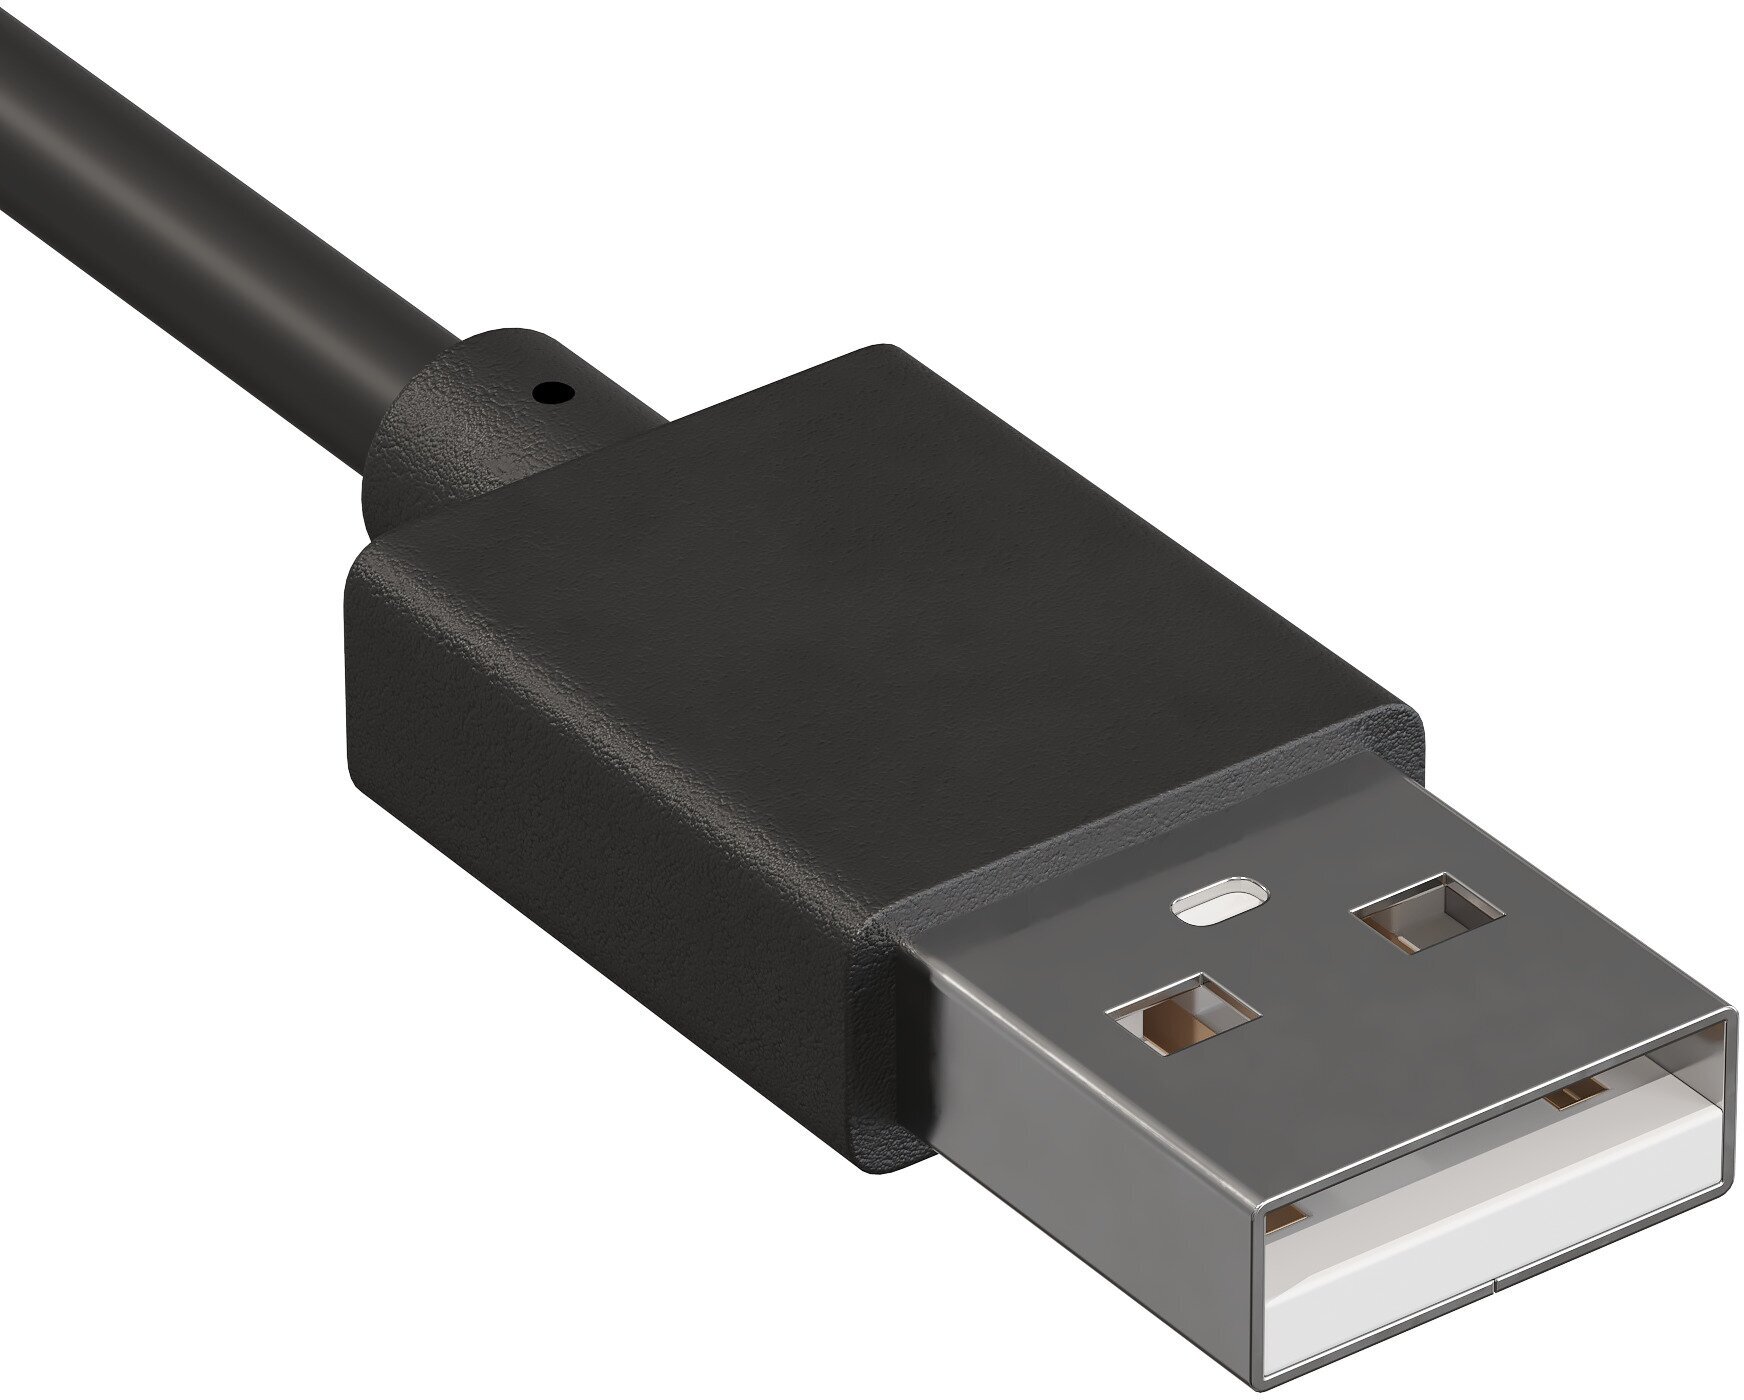 USB кабель GSMIN для зарядки Xiaomi Mi Band 5 / 6 / 7 зарядка Ксяоми Ми Бэнд / Ми Банд зарядное устройство (Черный)